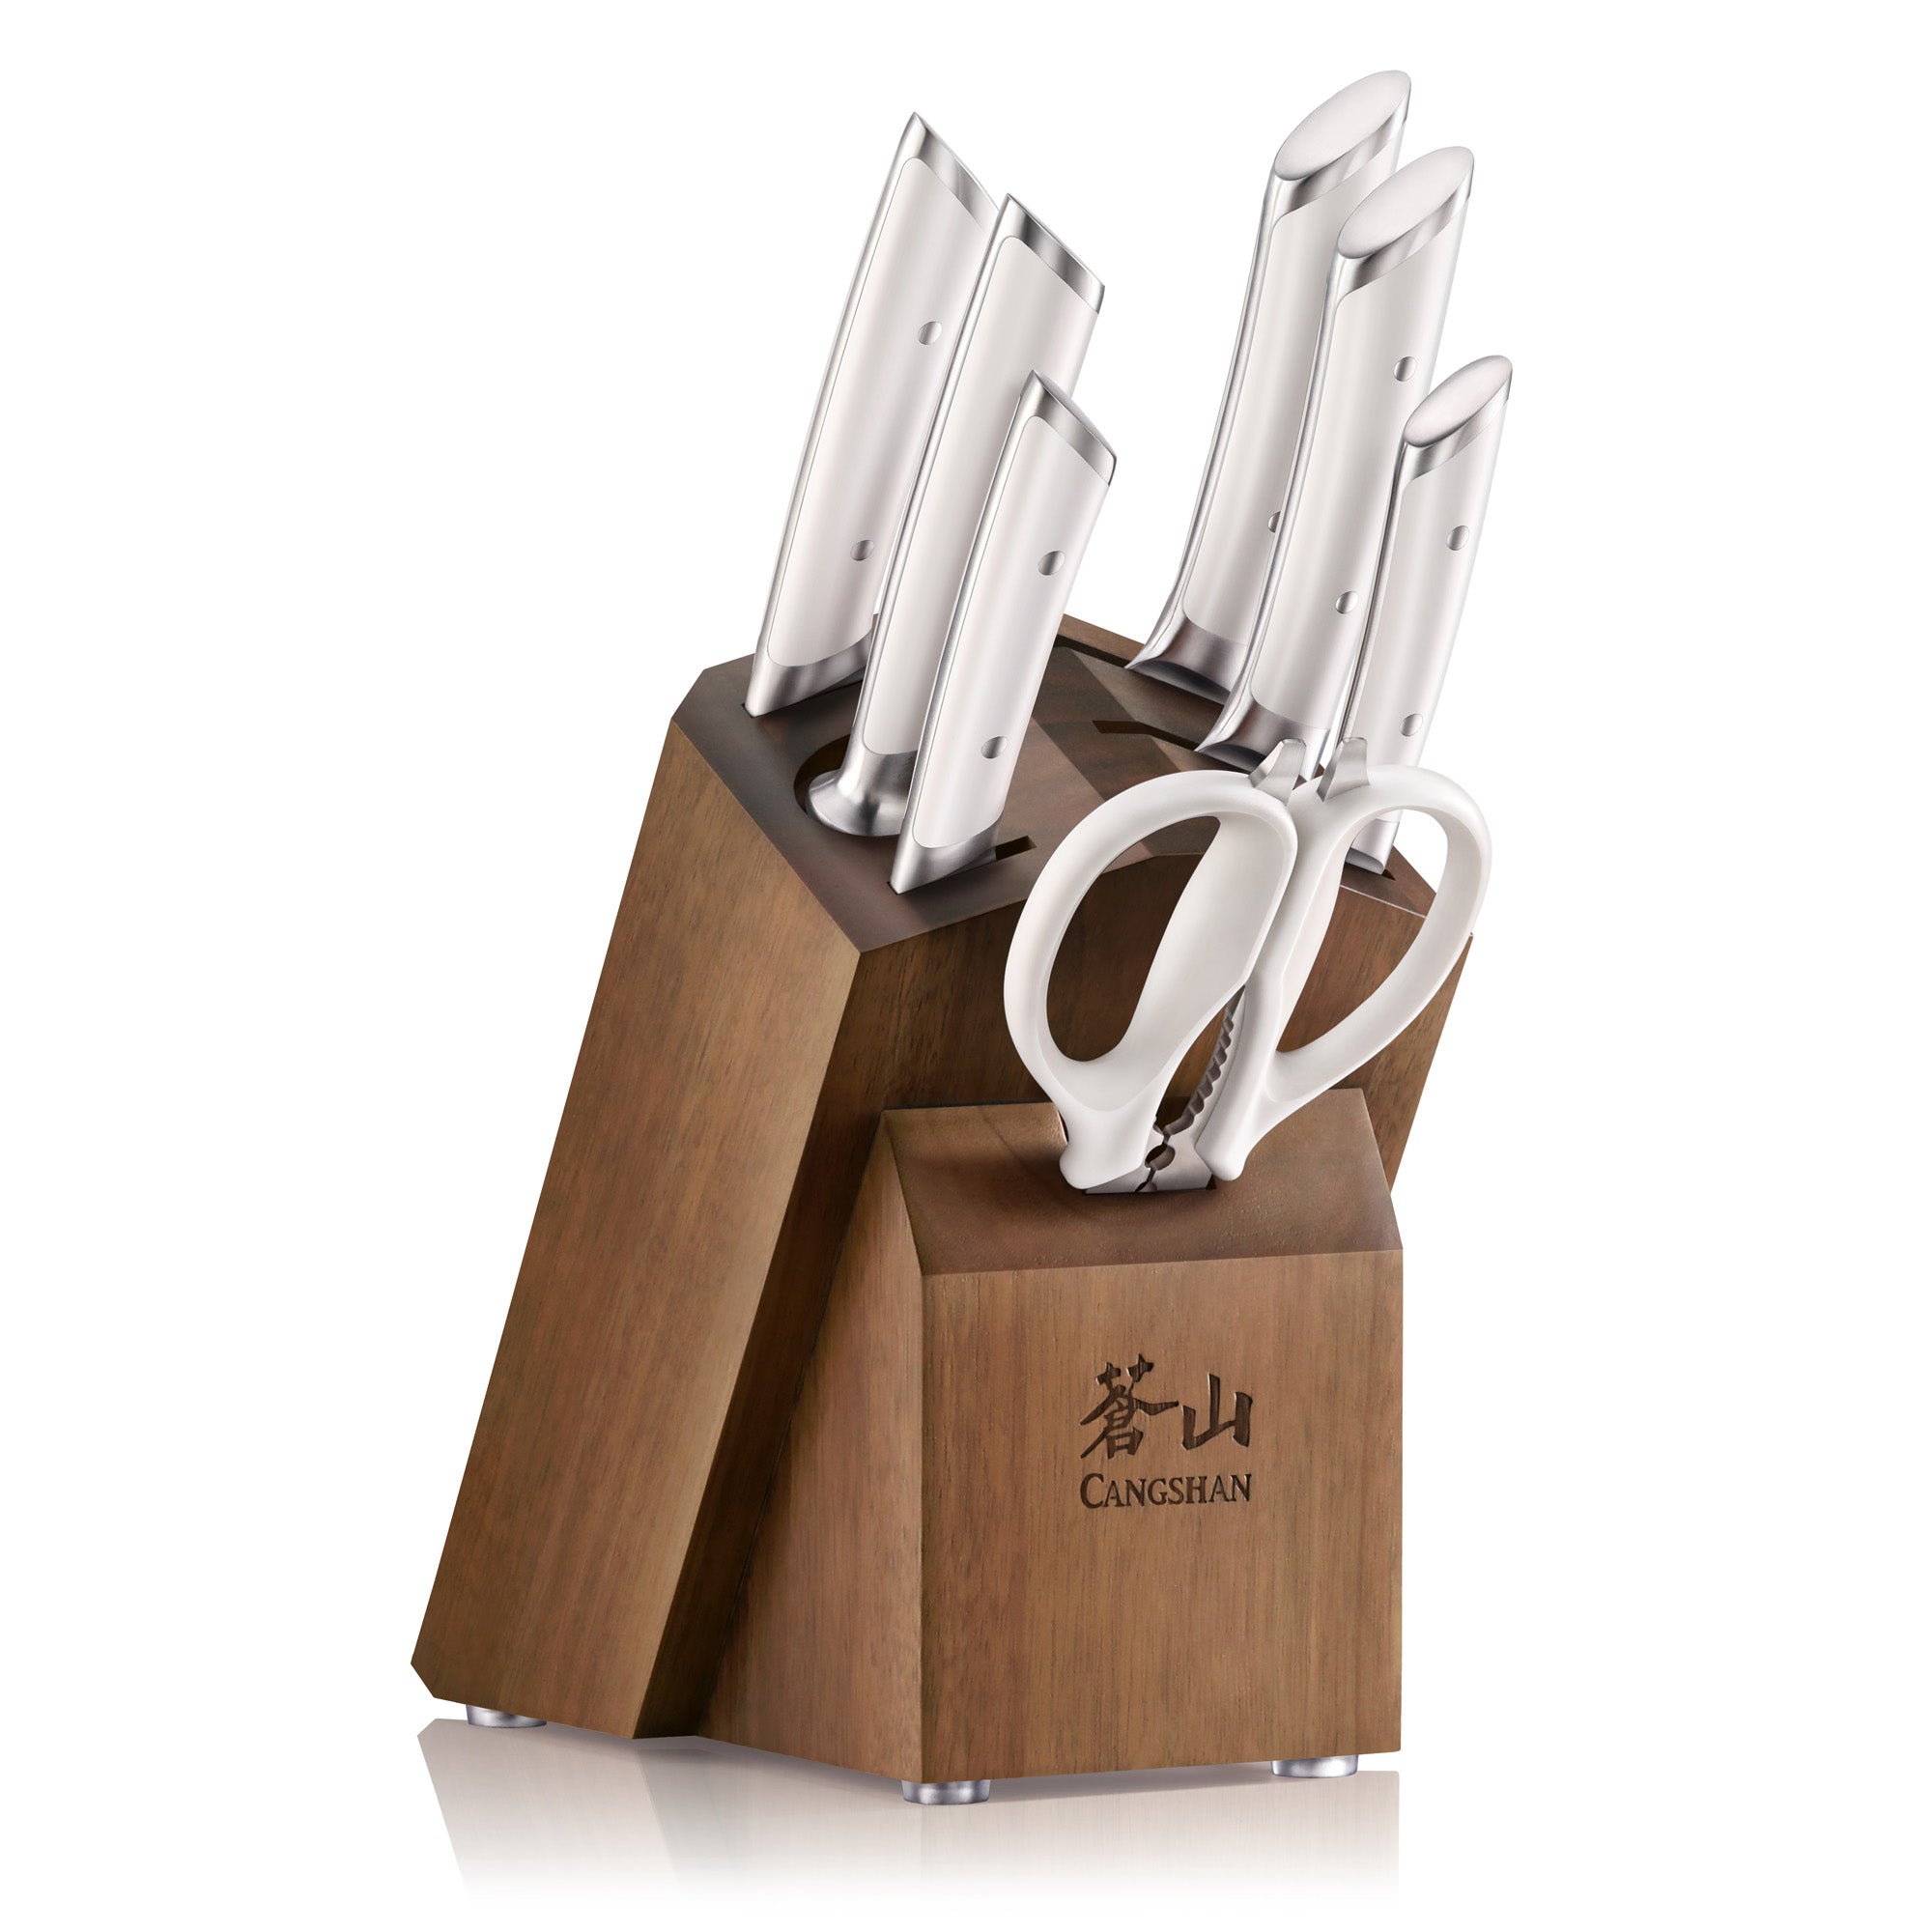 Cangshan HELENA Series German Steel 8-piece Knife Block Set, White